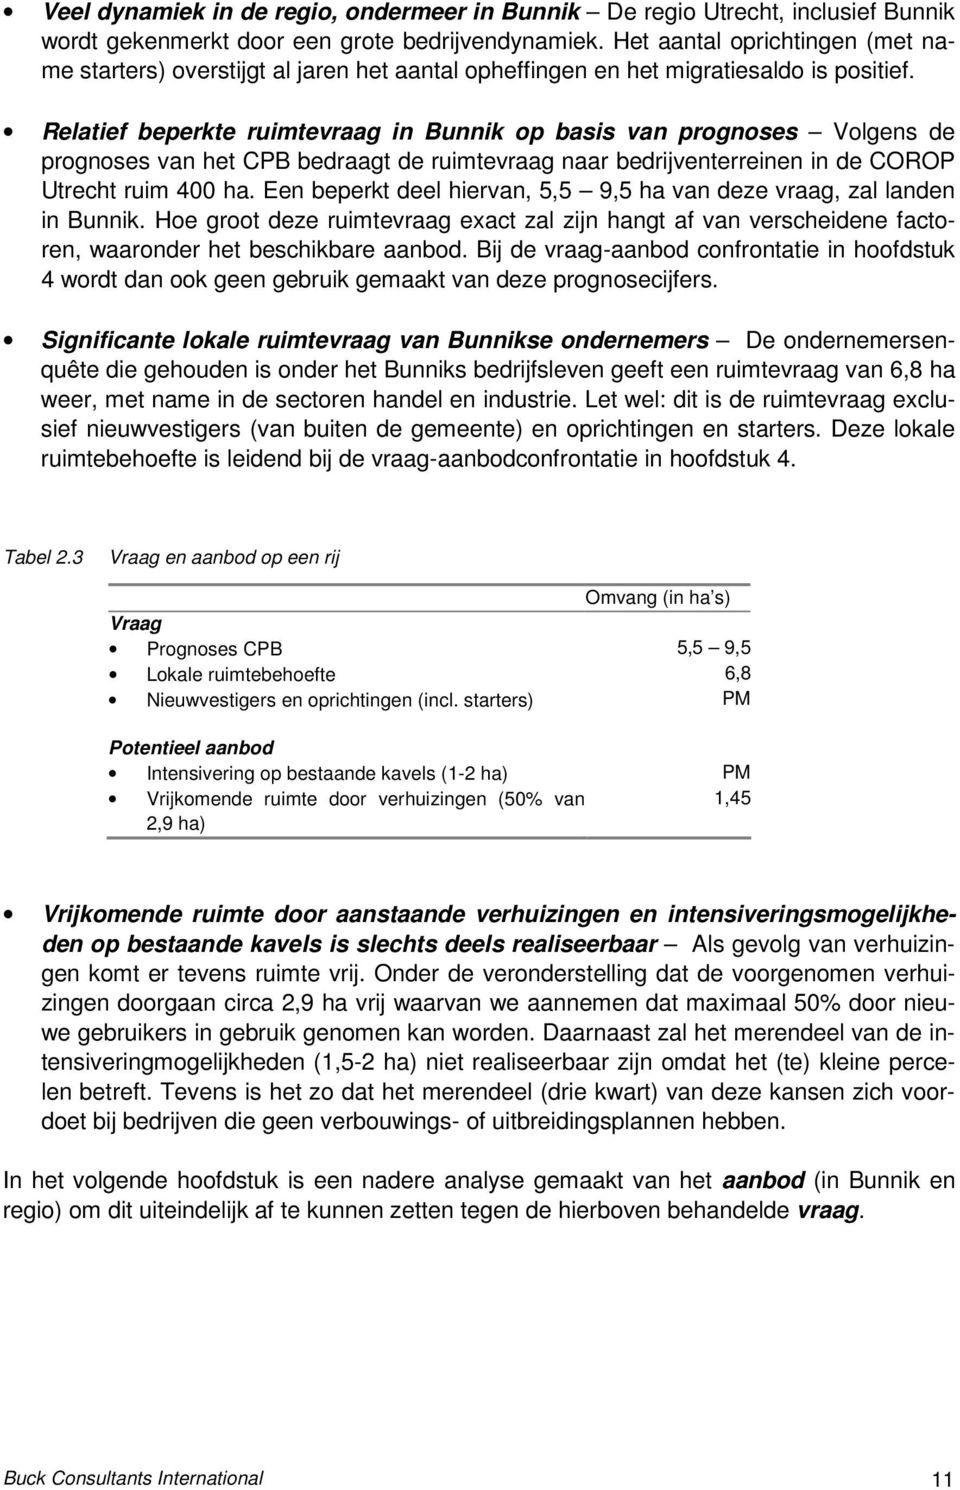 Relatief beperkte ruimtevraag in Bunnik op basis van prognoses Volgens de prognoses van het CPB bedraagt de ruimtevraag naar bedrijventerreinen in de COROP Utrecht ruim 400 ha.